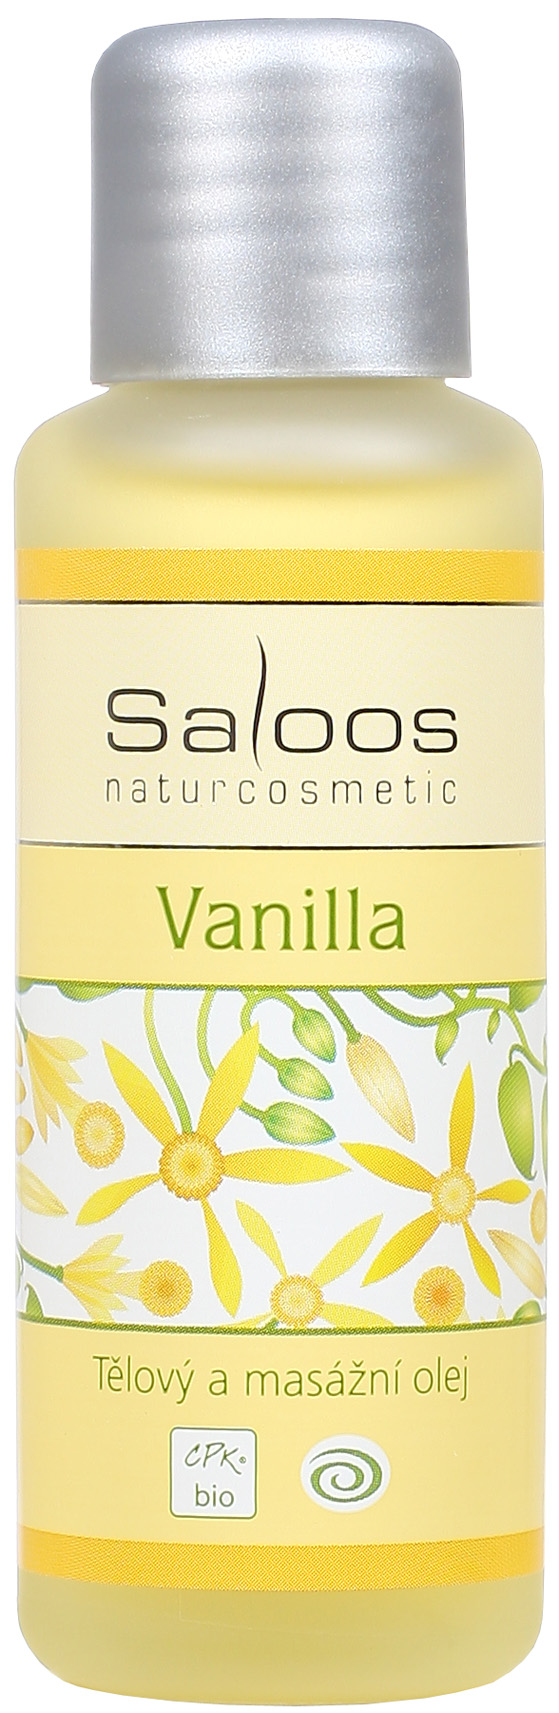 Vanilla - tělový a masážní olej 50